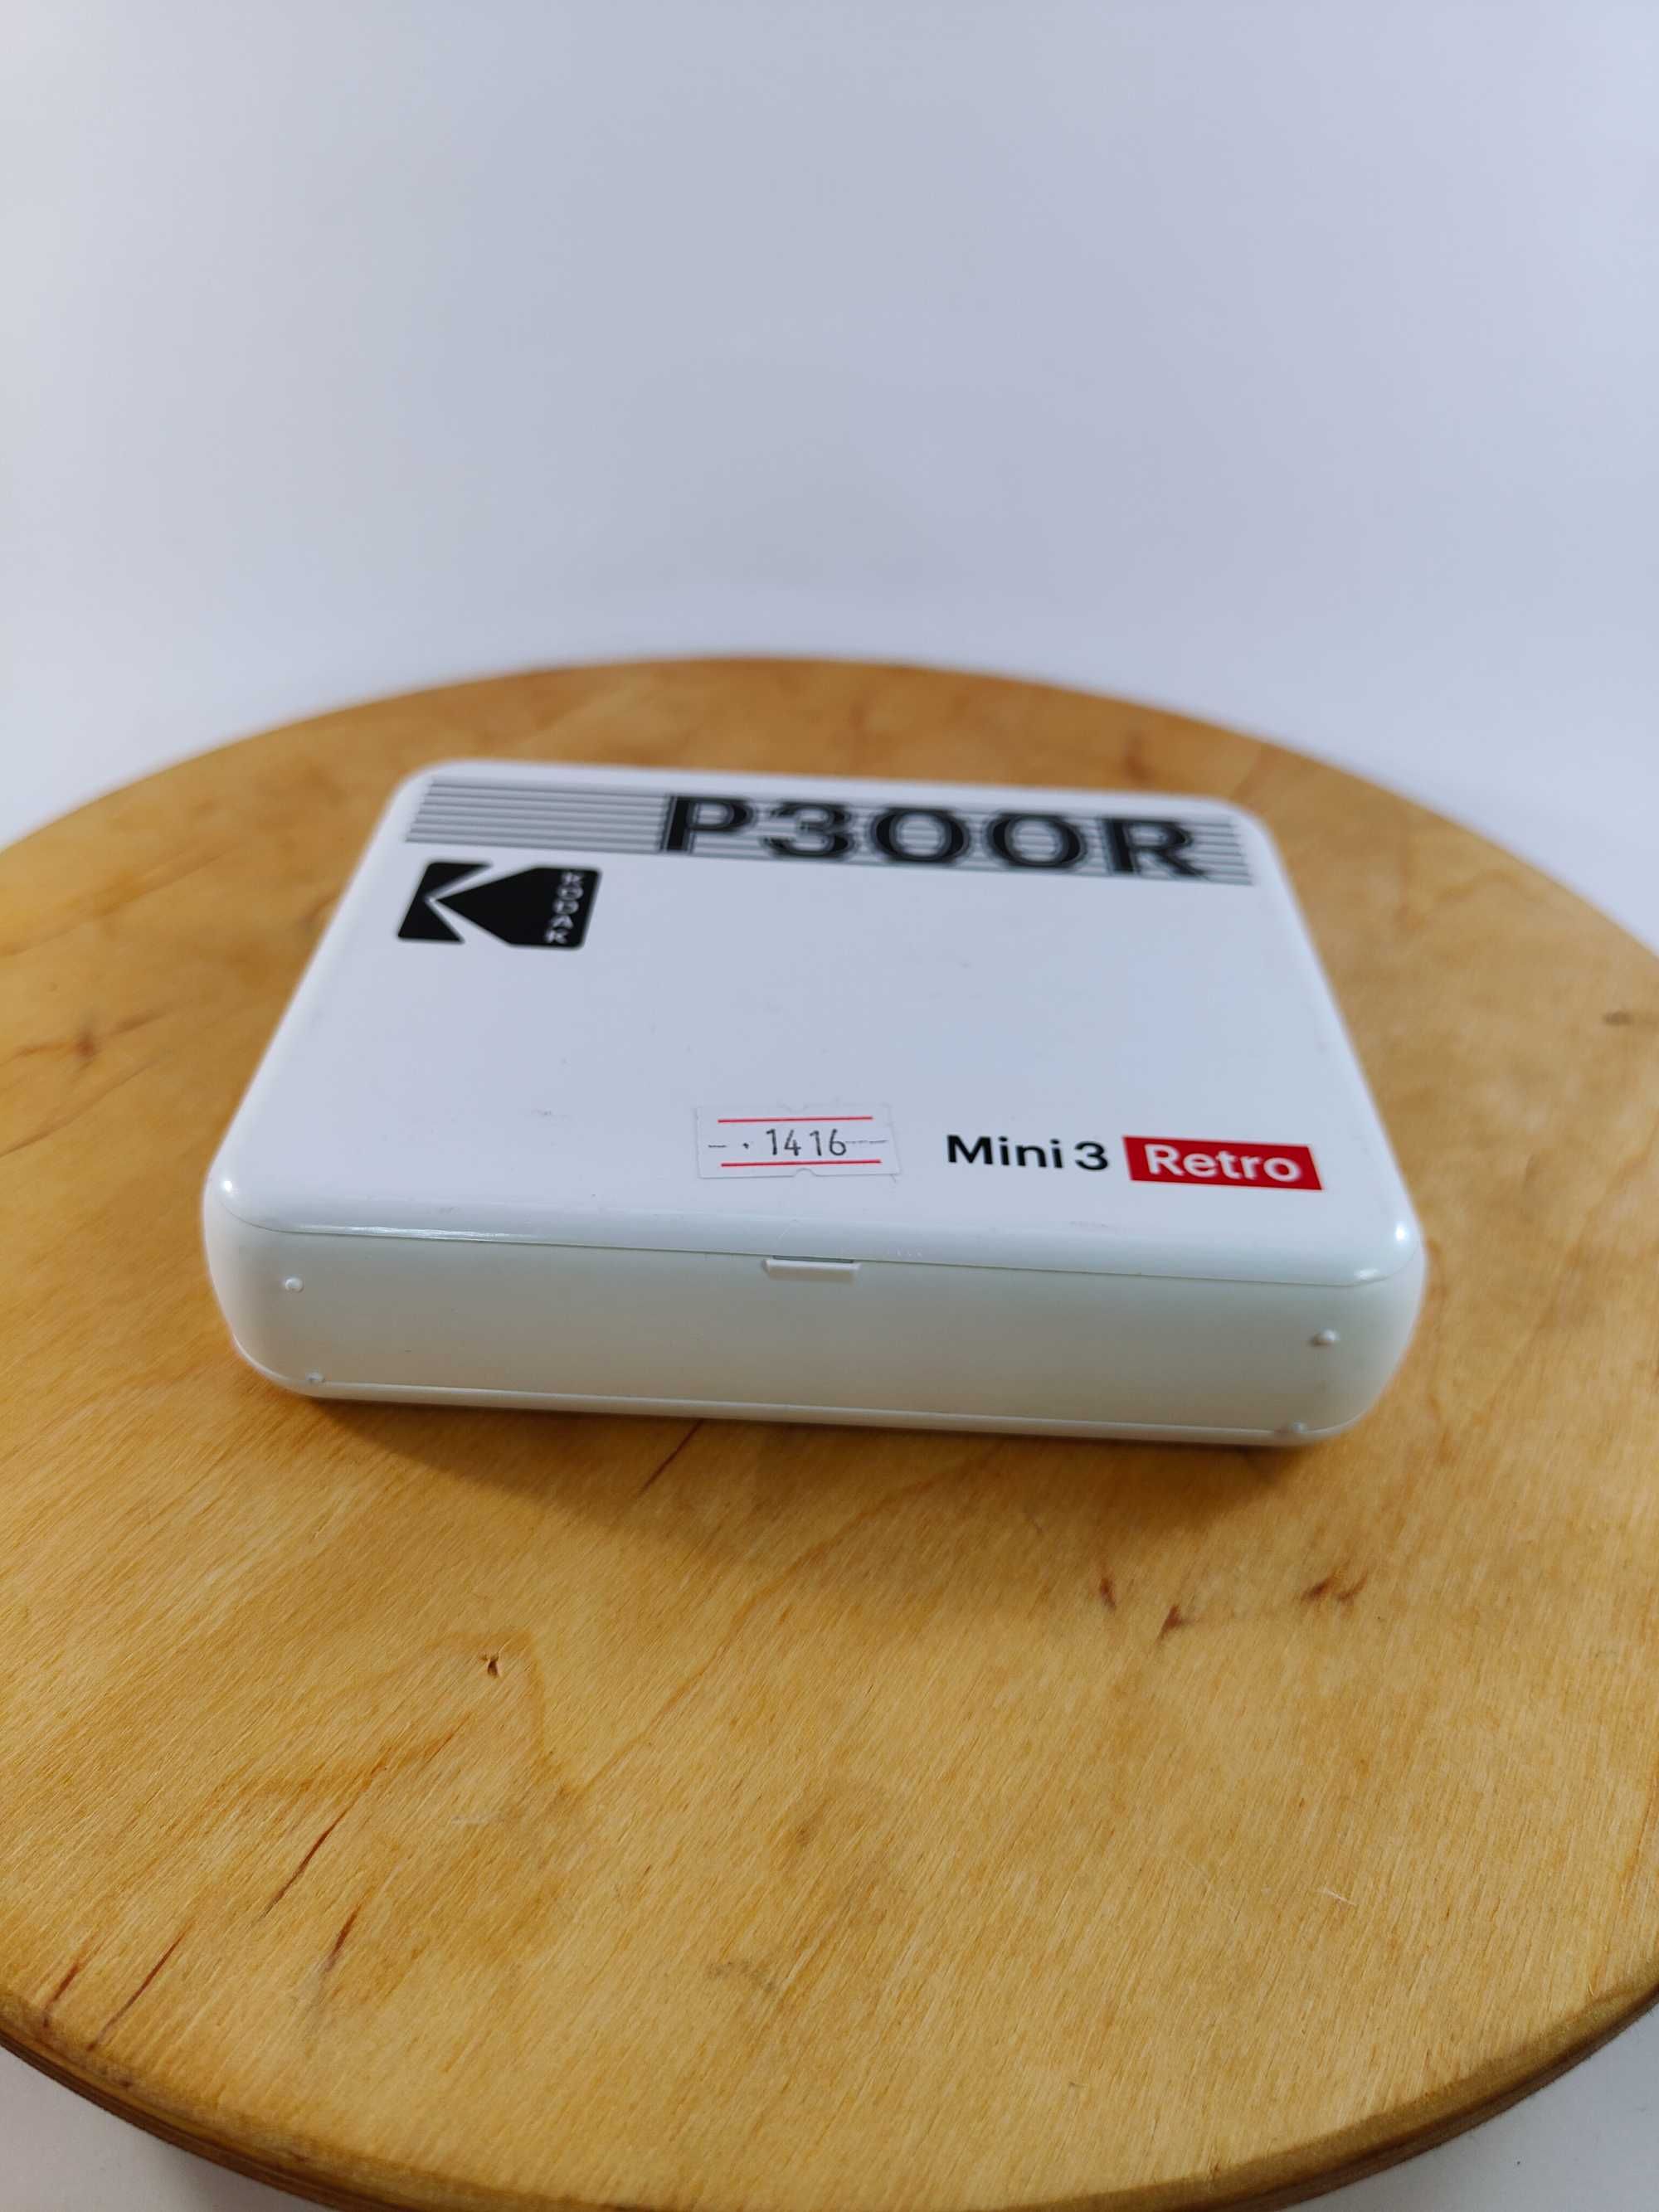 Фотопринтер Kodak P300R Mini 3 Retro (1416)